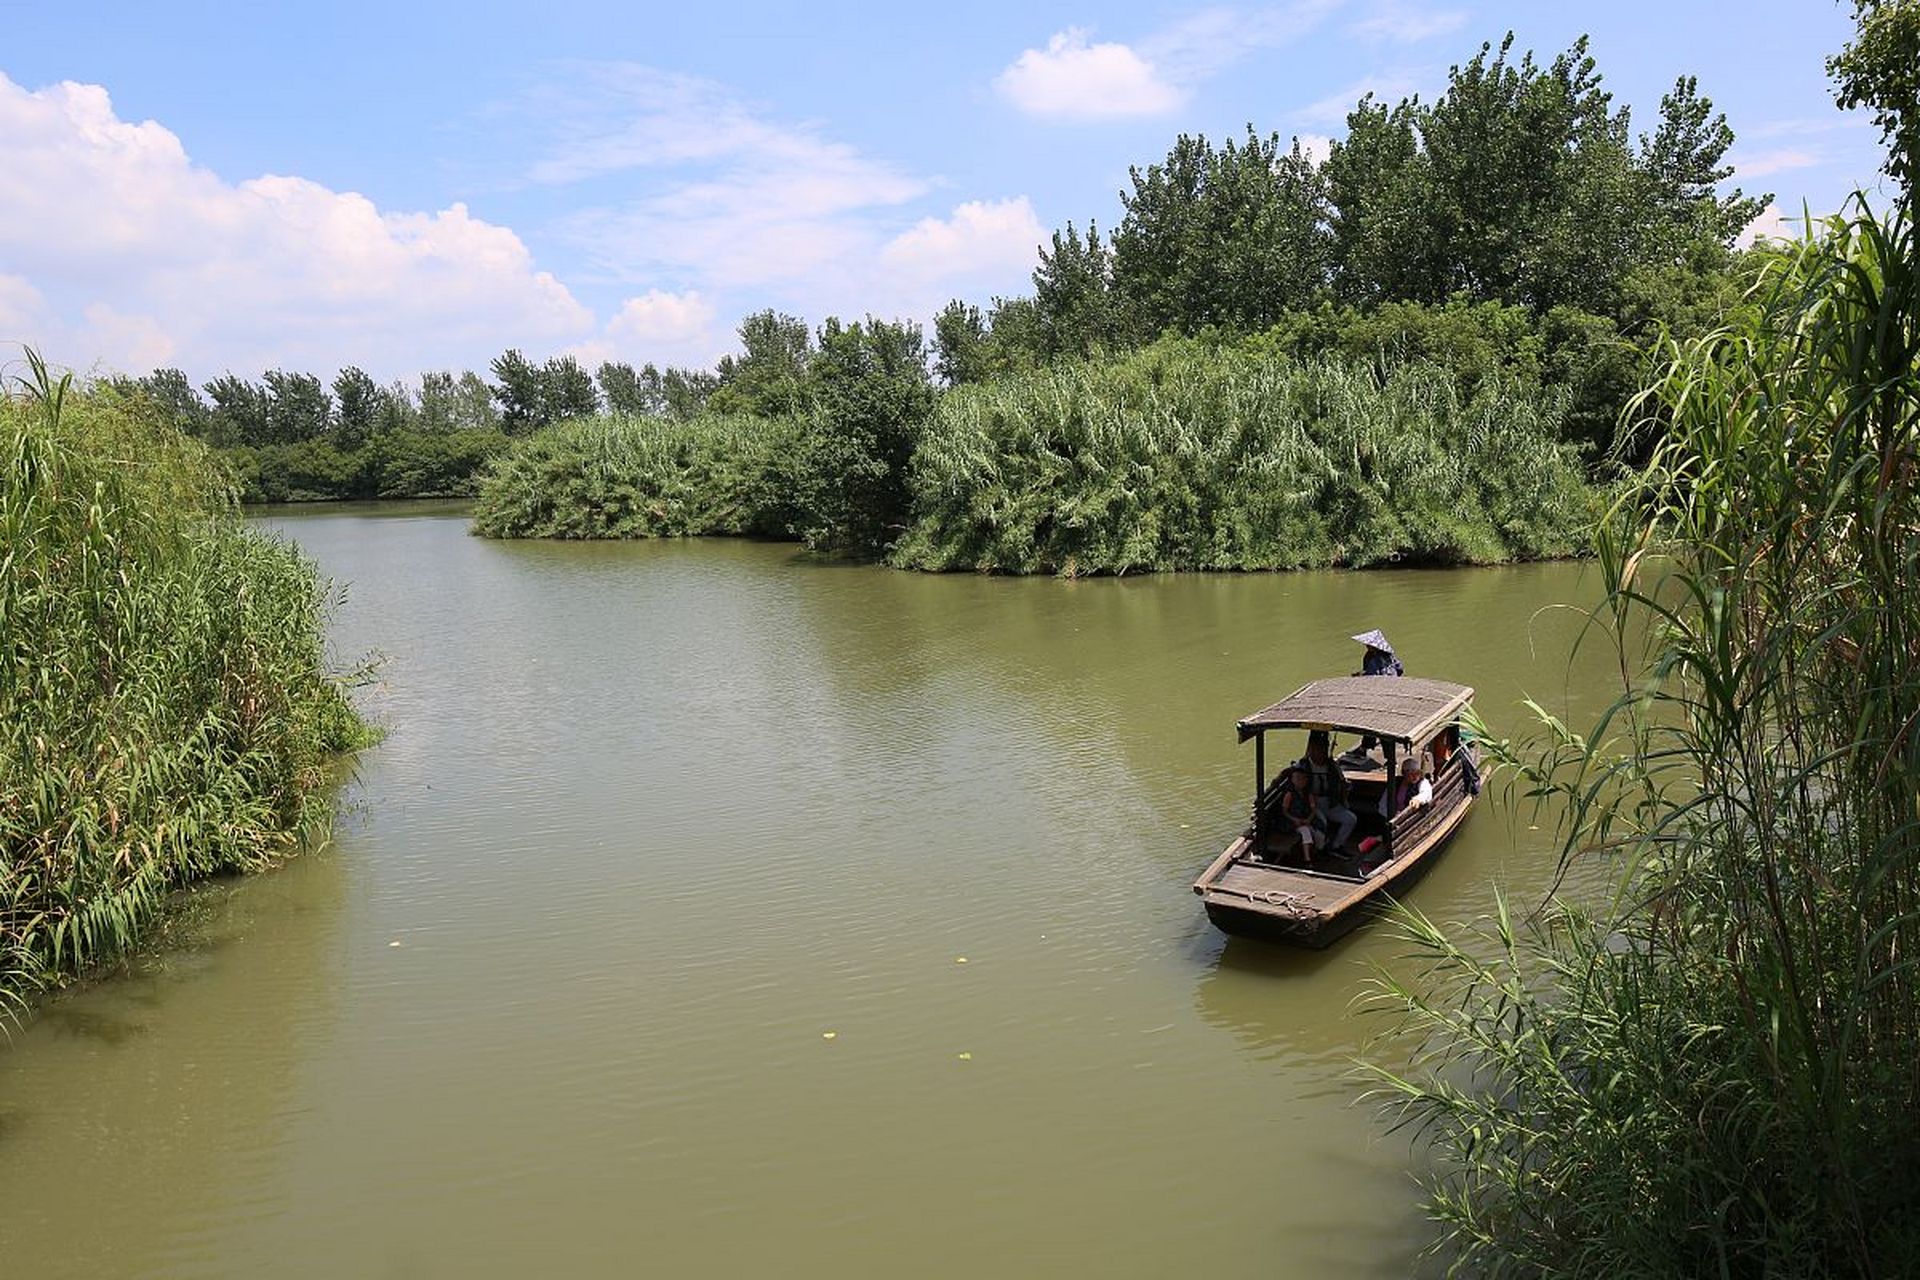 位于江苏省泗洪县的洪泽湖湿地景区,被誉为江苏省绿意的代表